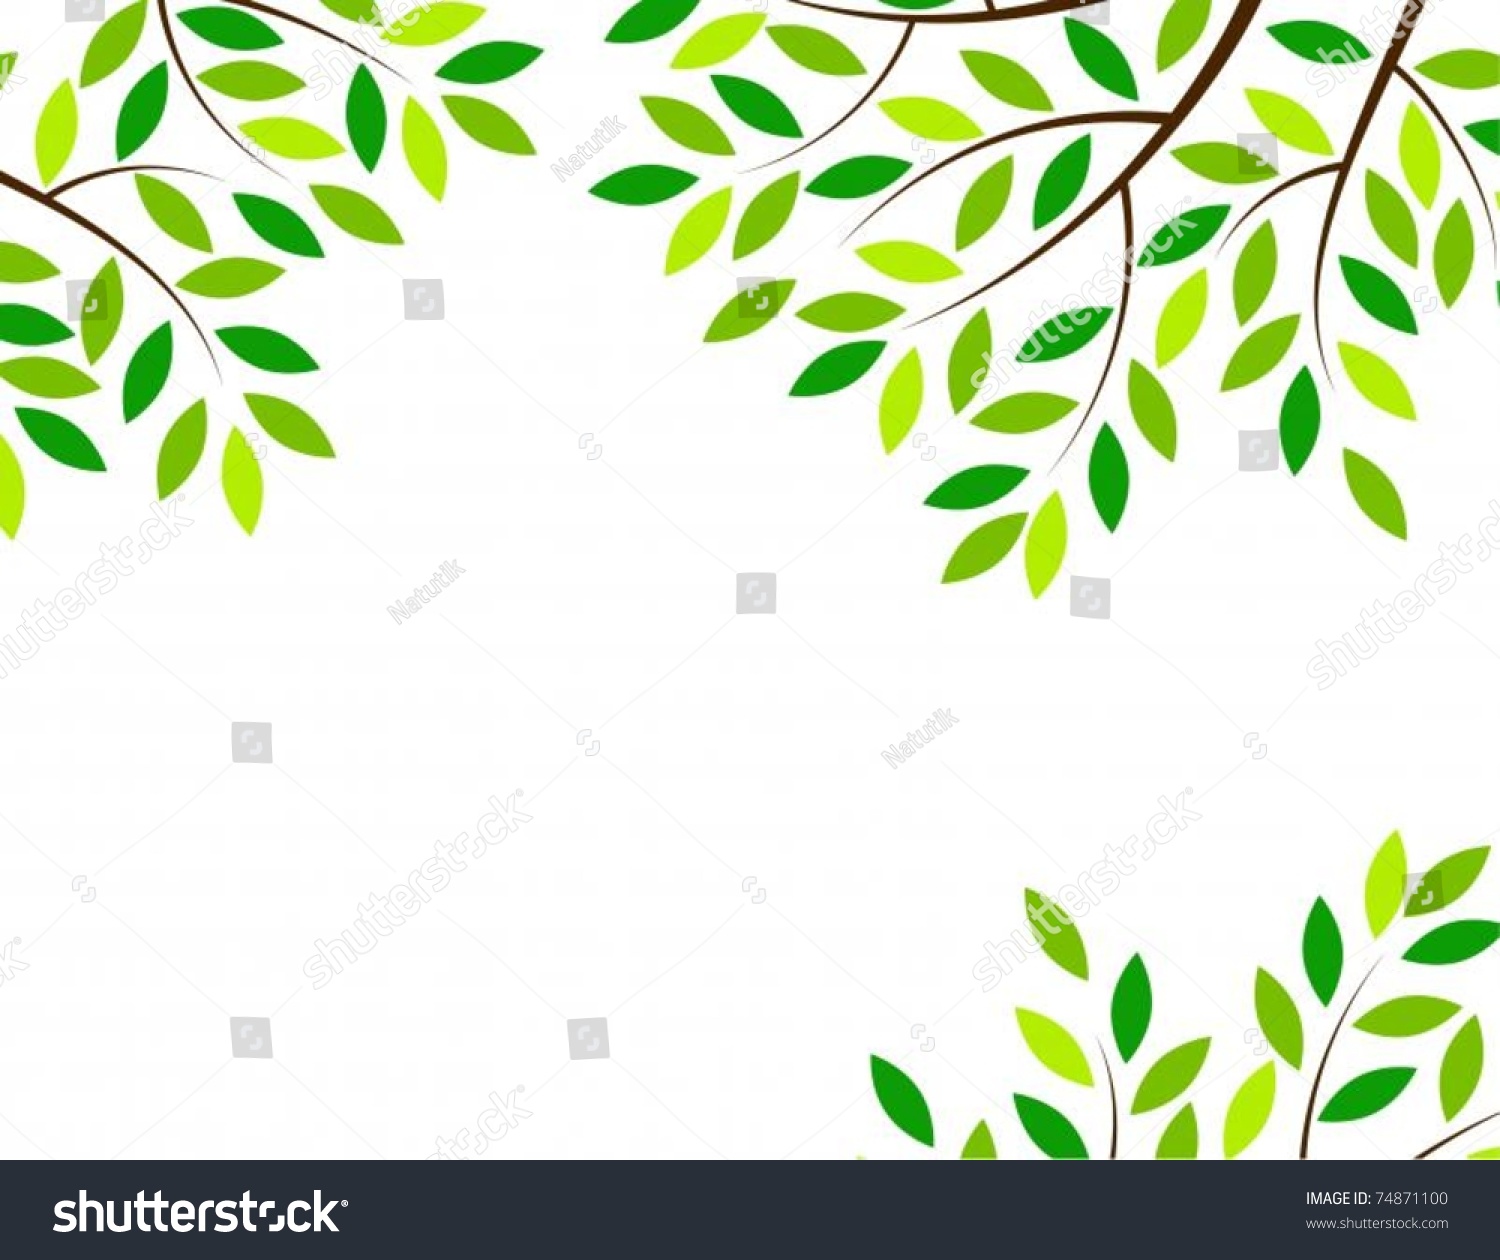 Vector Of Tree Frame - 74871100 : Shutterstock